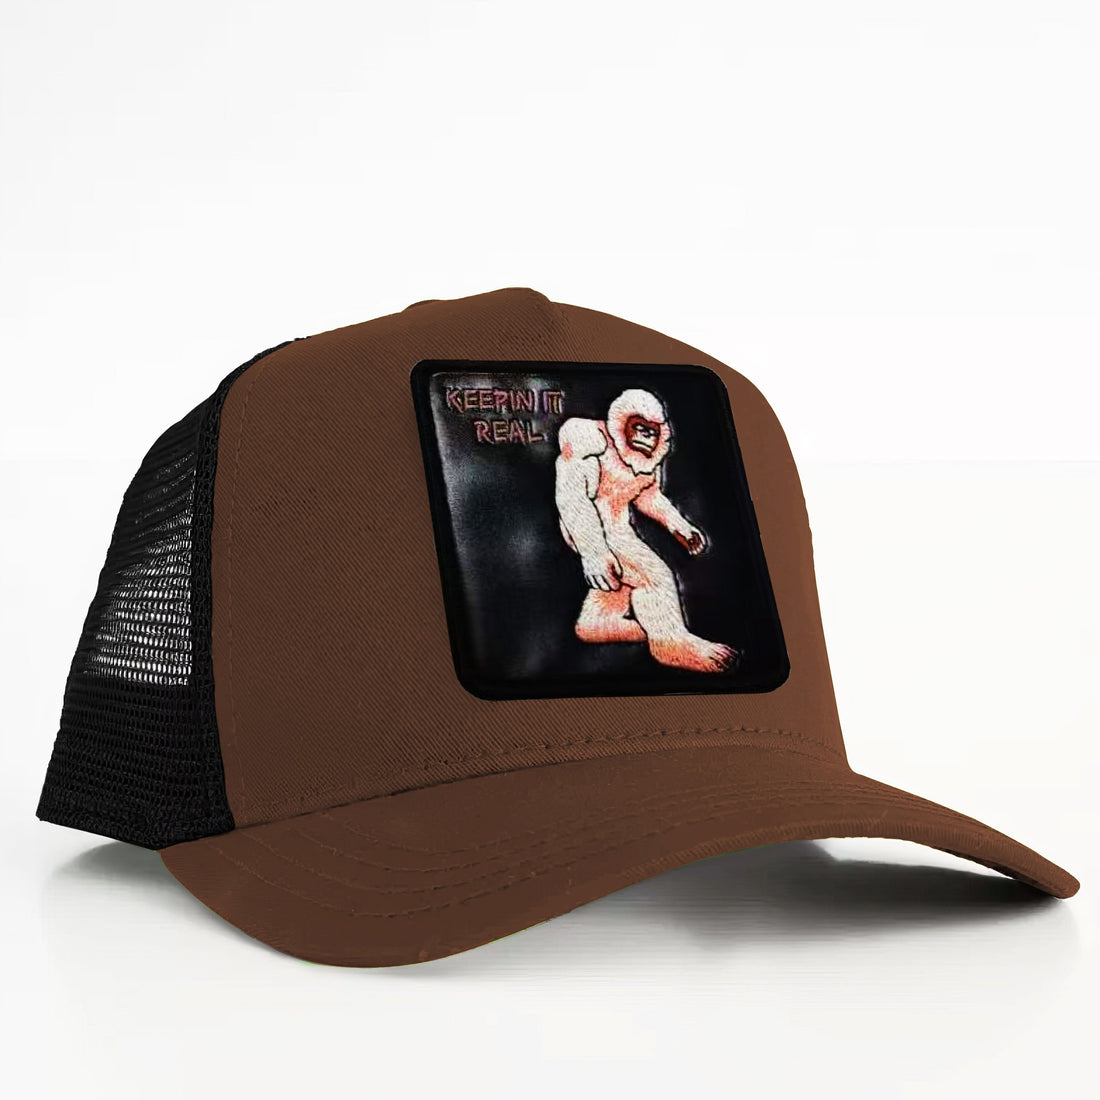 Bigfoot - "Keepin It Real" Trucker Hat